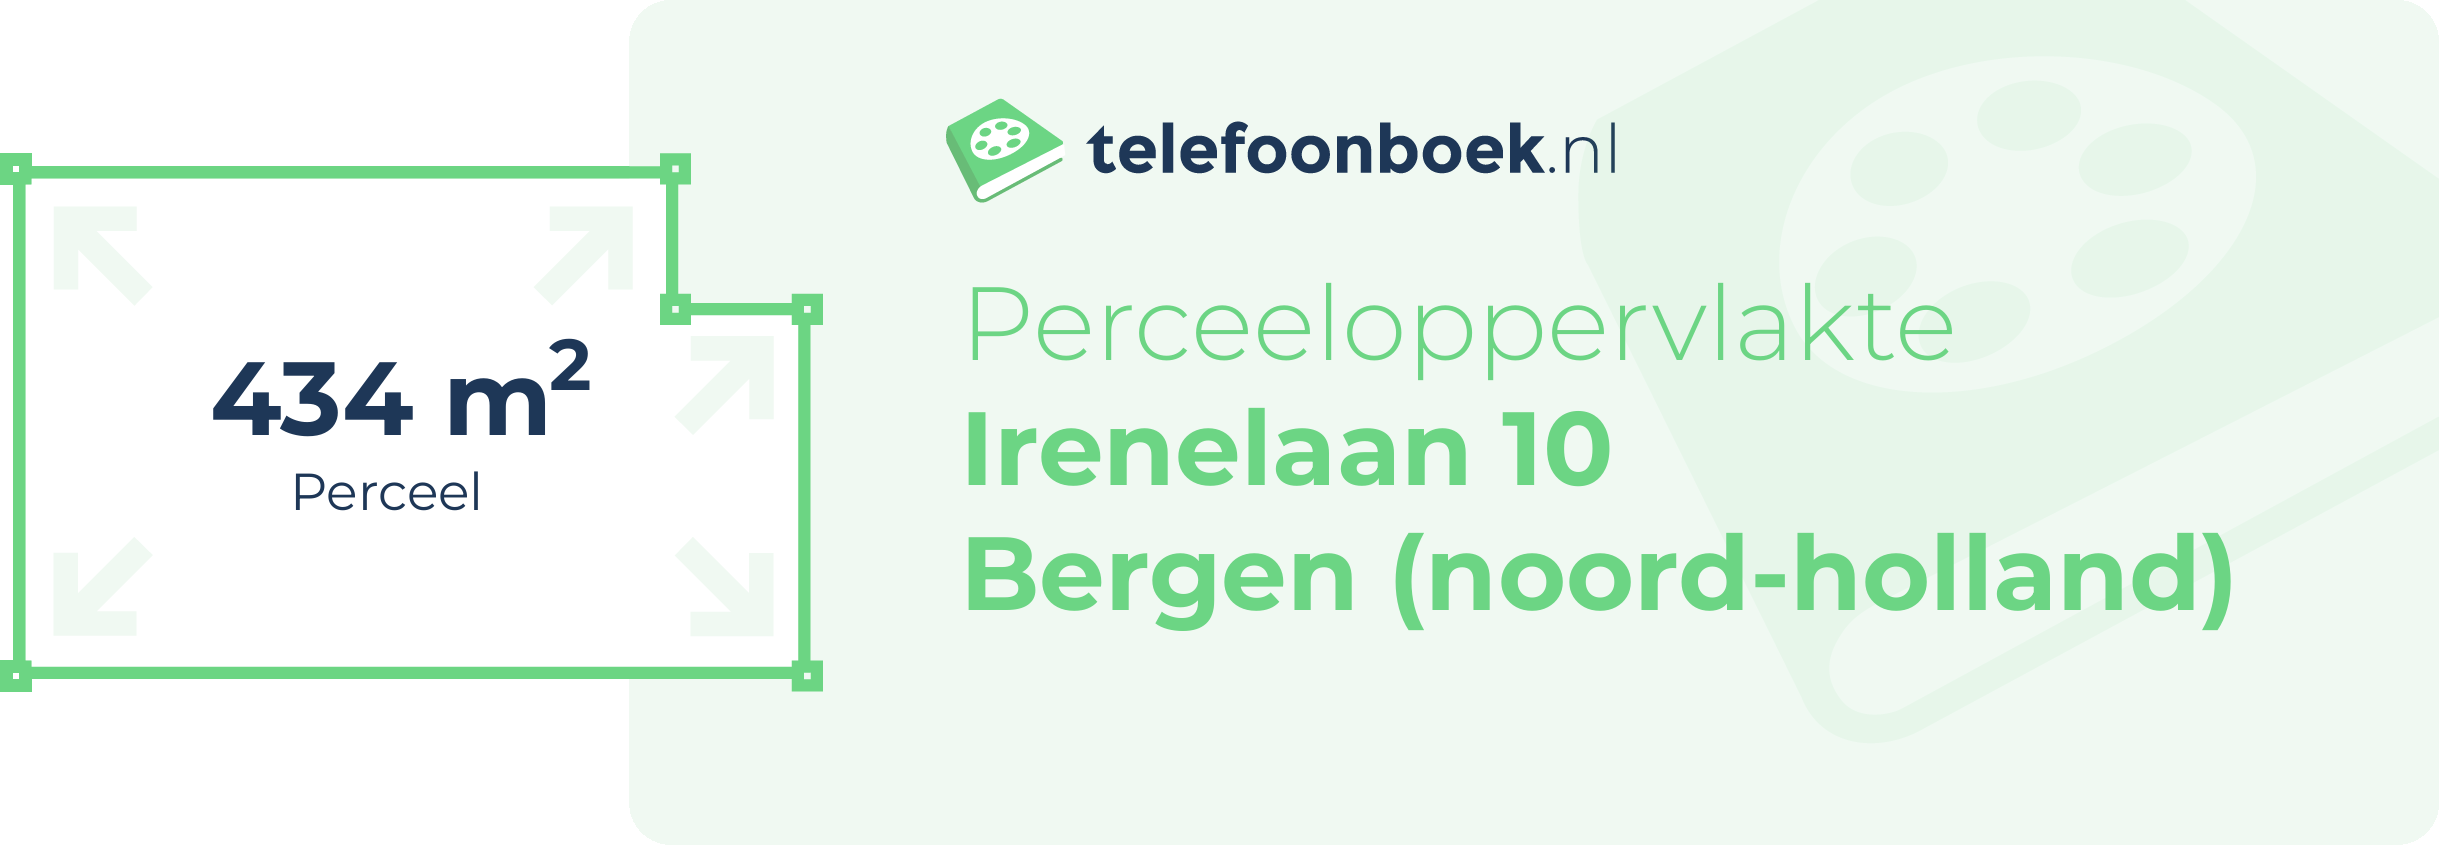 Perceeloppervlakte Irenelaan 10 Bergen (Noord-Holland)